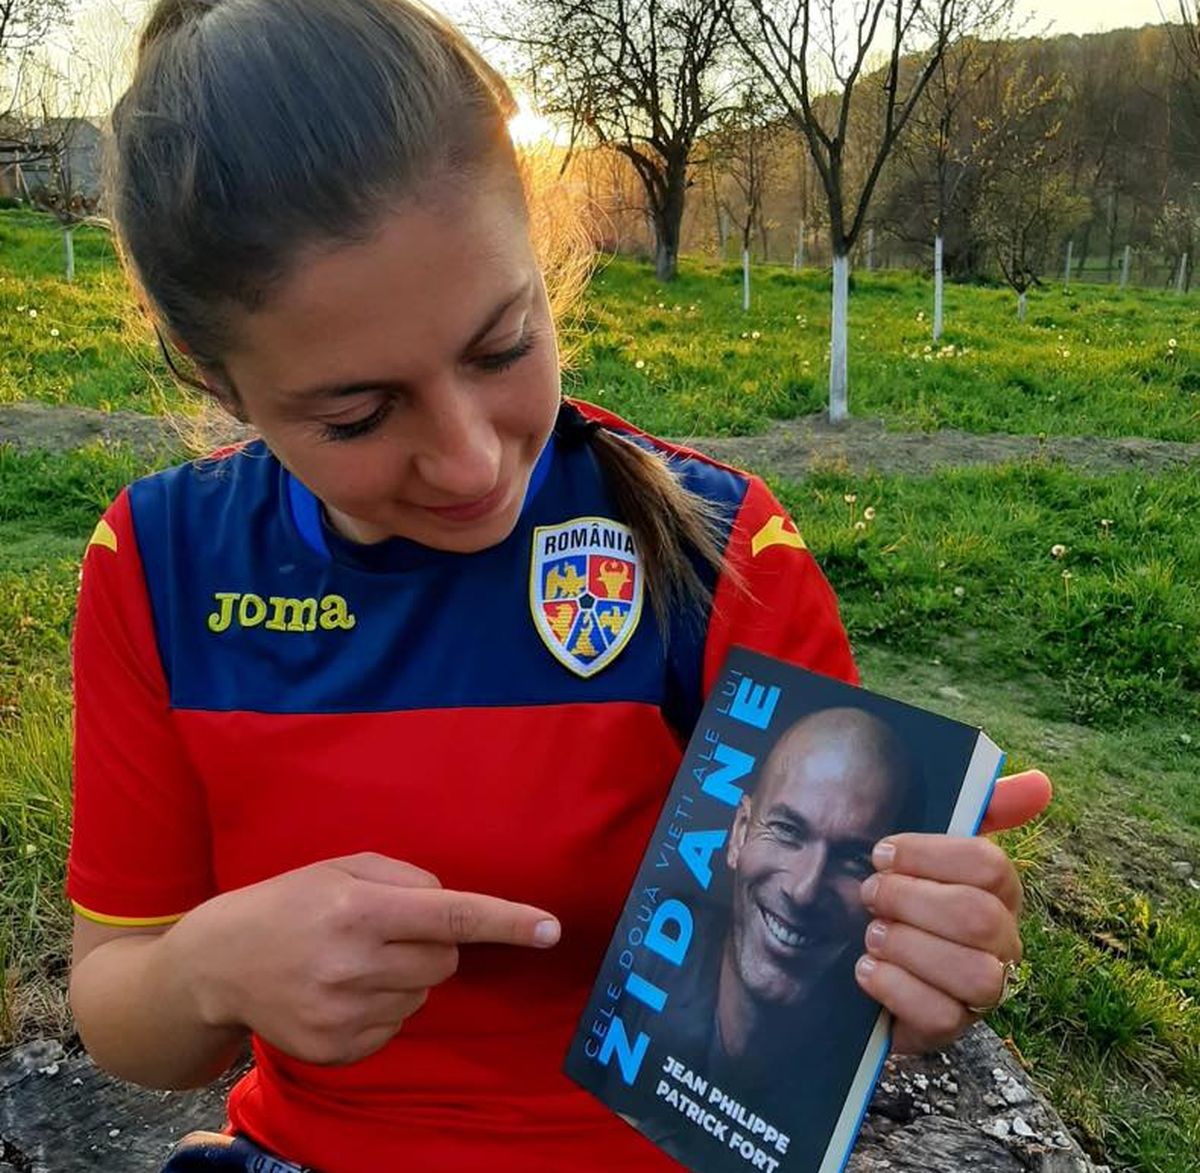 Povestea Irinei Giurgiu, prima femeie din România cu licență UEFA Pro